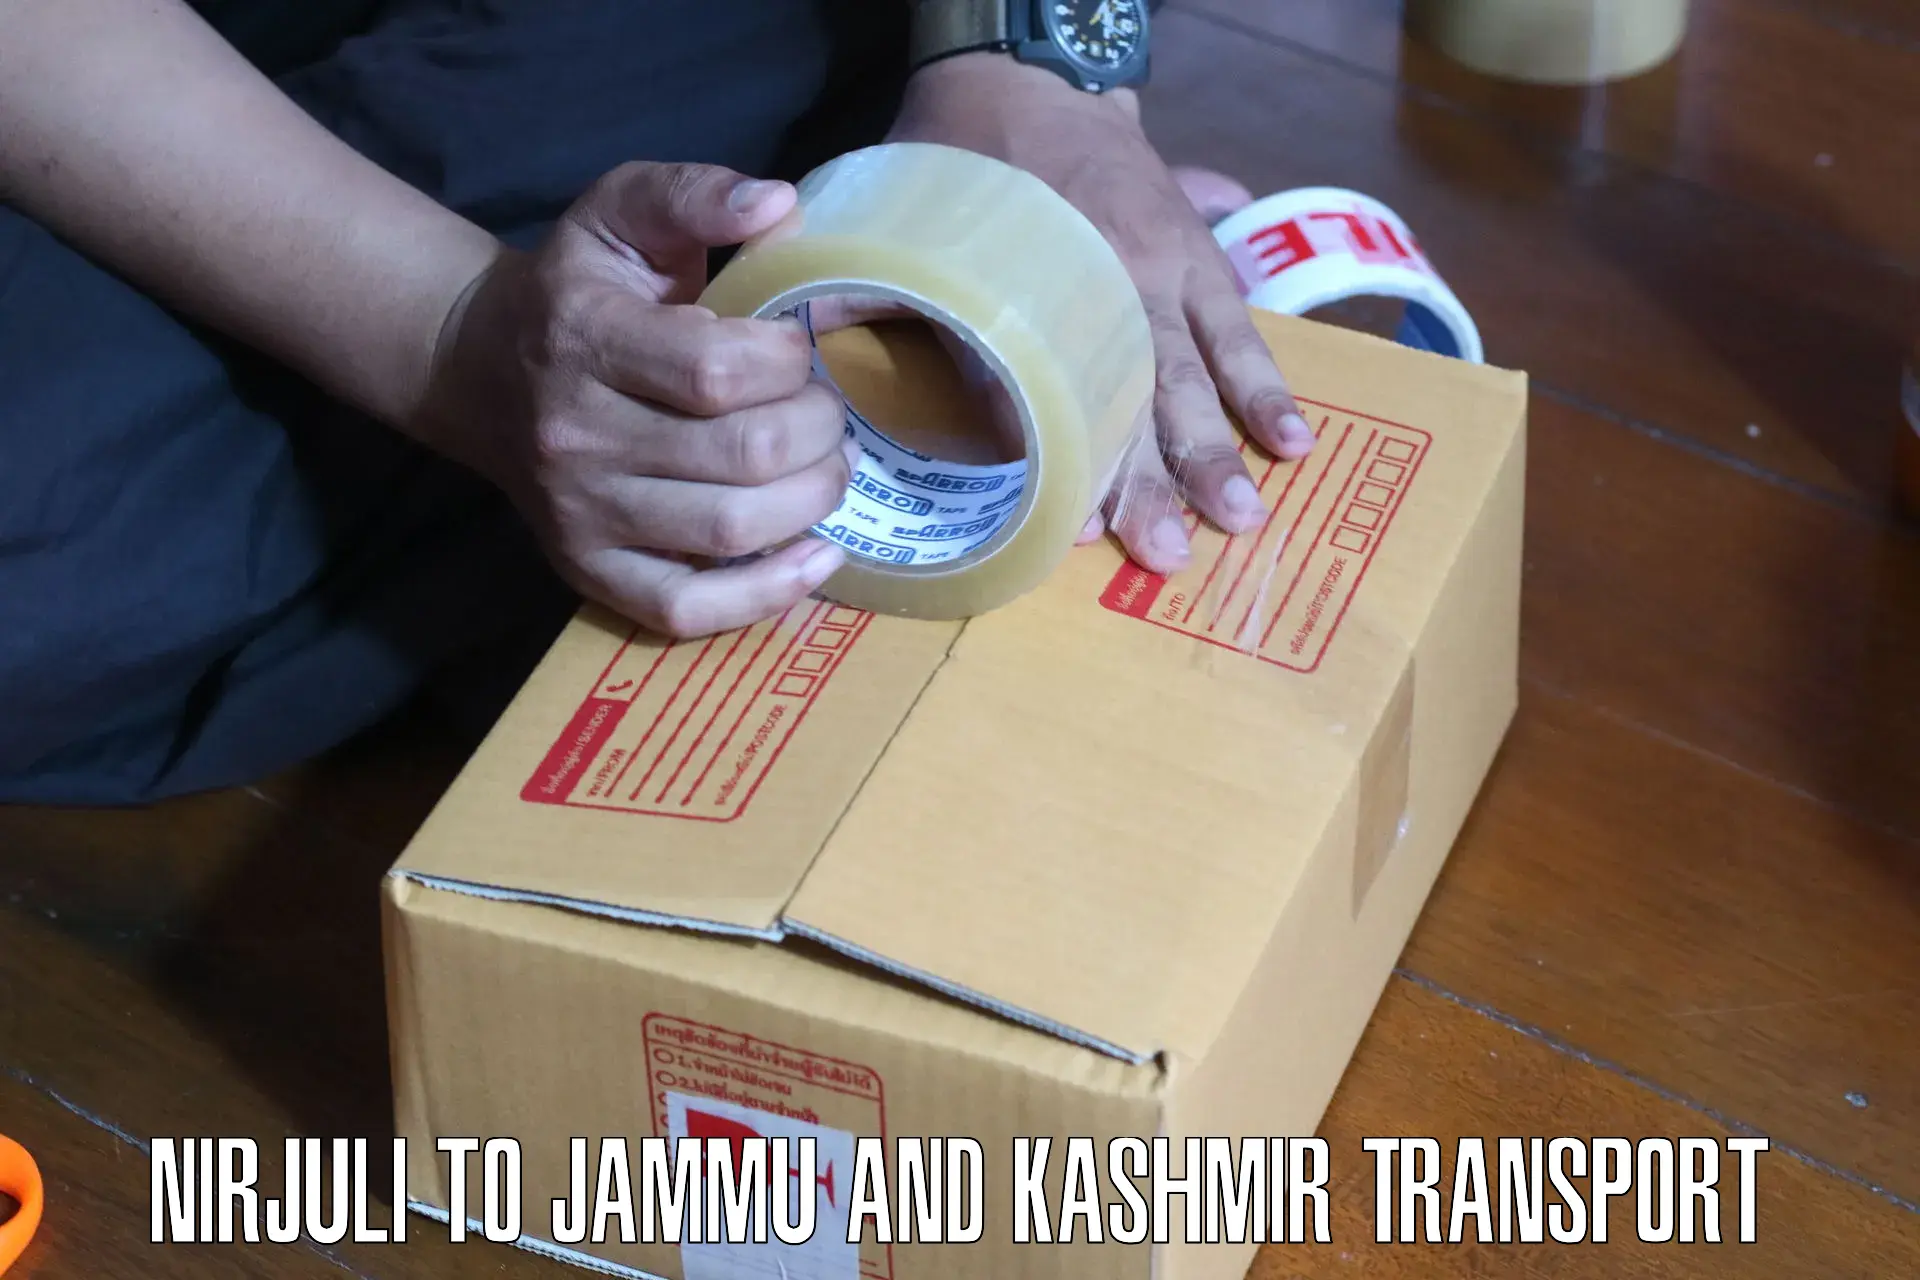 Daily parcel service transport Nirjuli to University of Jammu